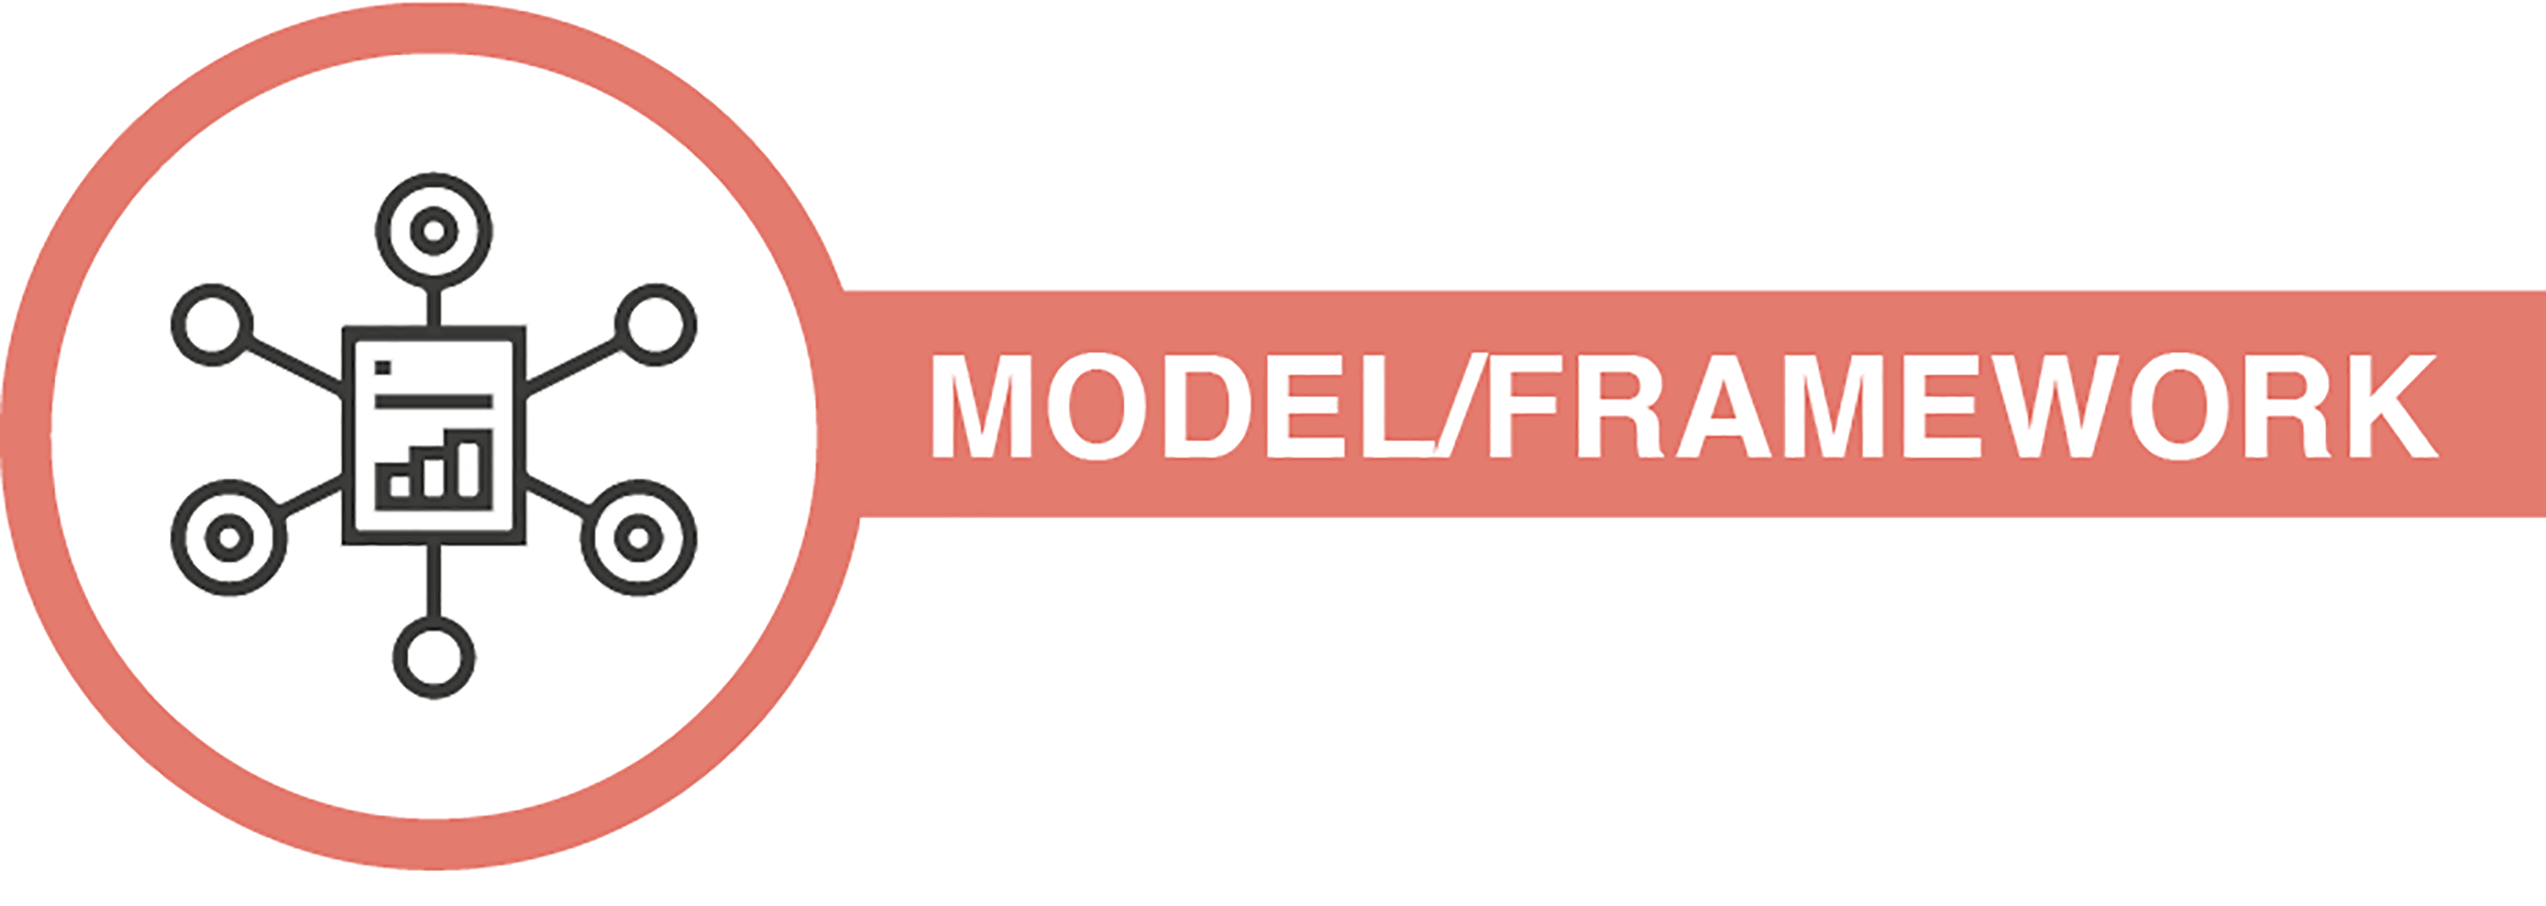 model-framework